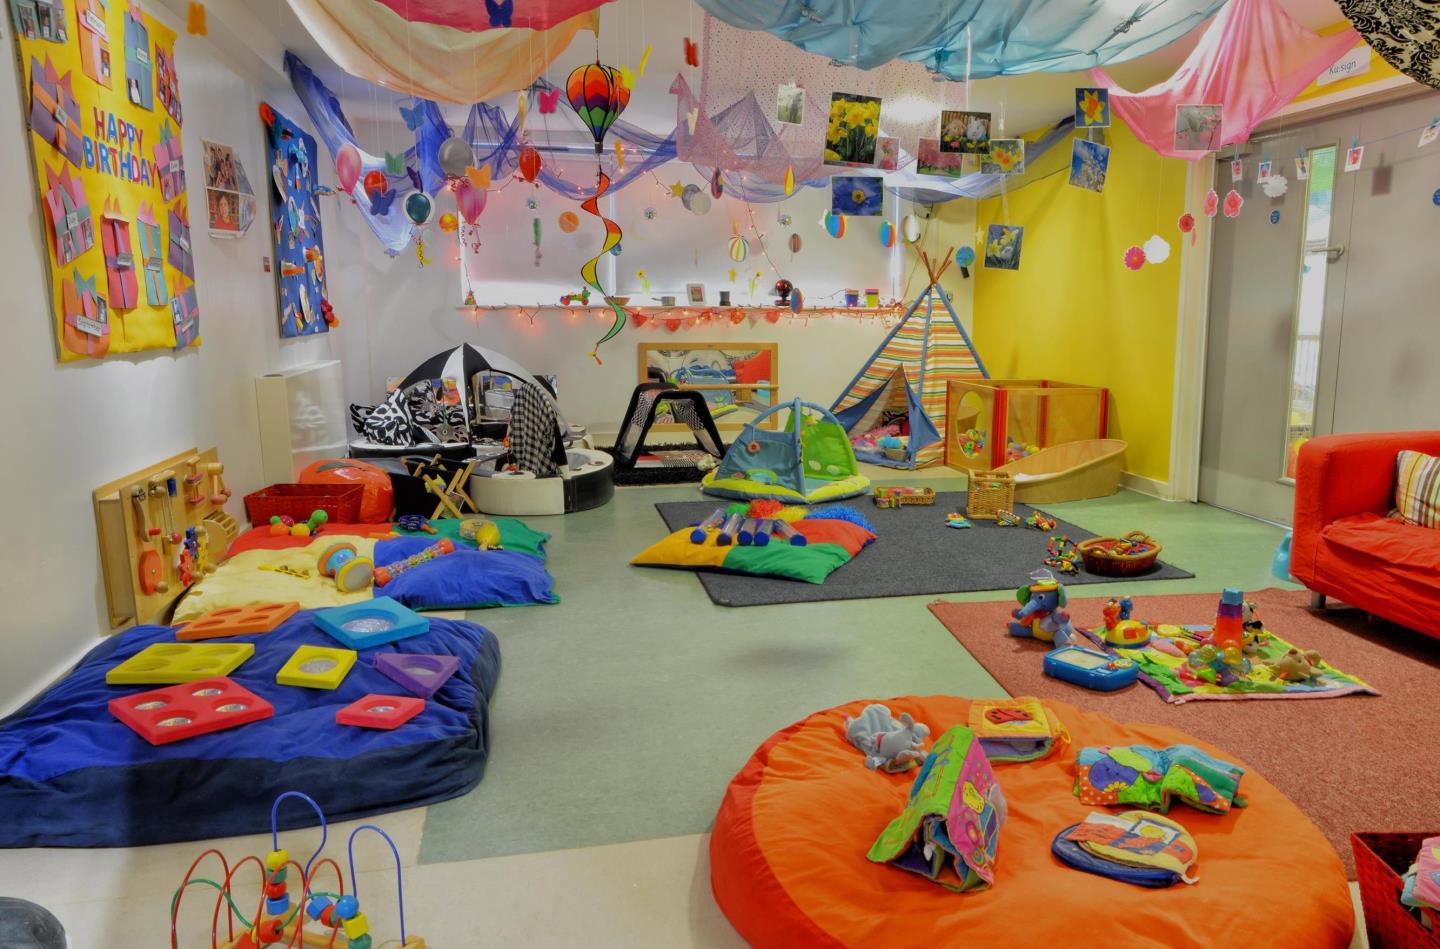 Bright Horizons Crewe Day Nursery and Preschool Crewe 03300 575632